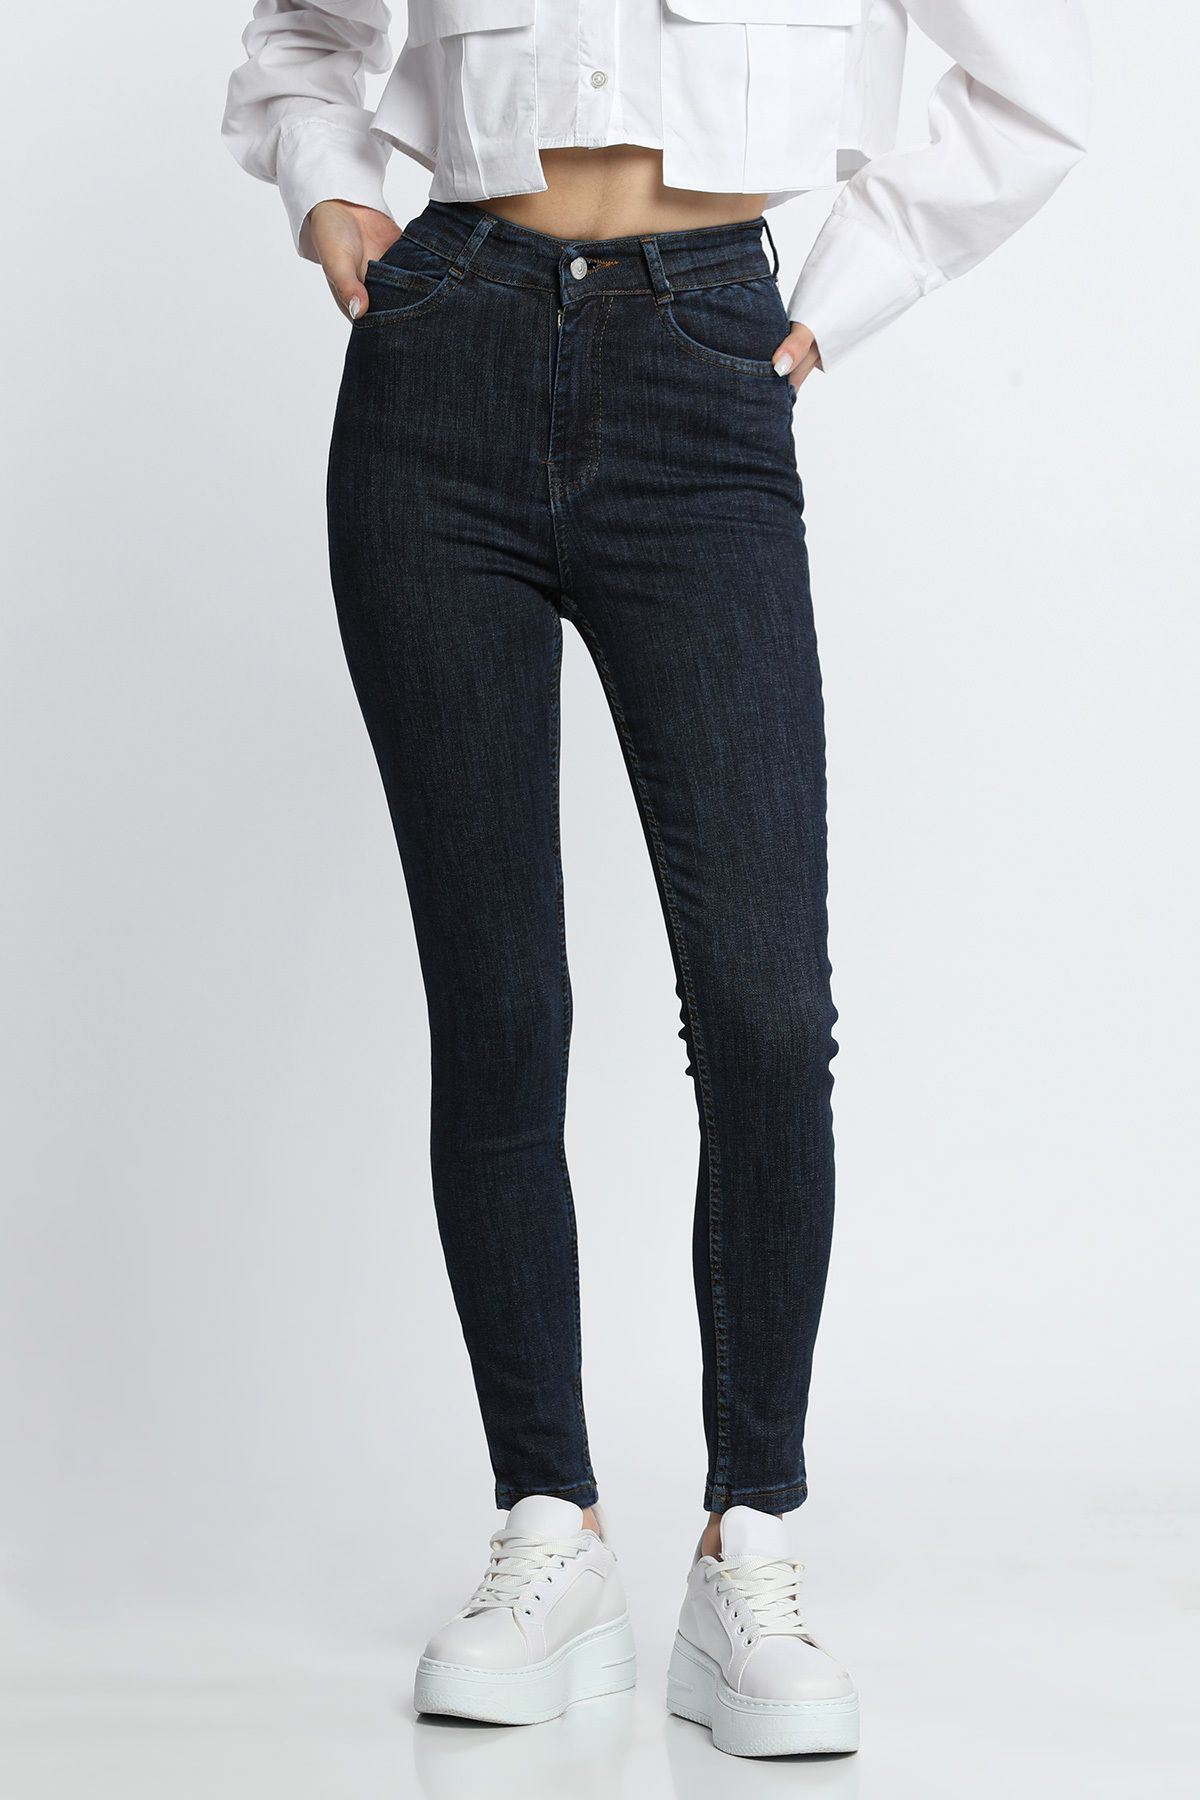 Julude Lacivert Kadın Yüksek Bel Likralı Jeans Pantolon